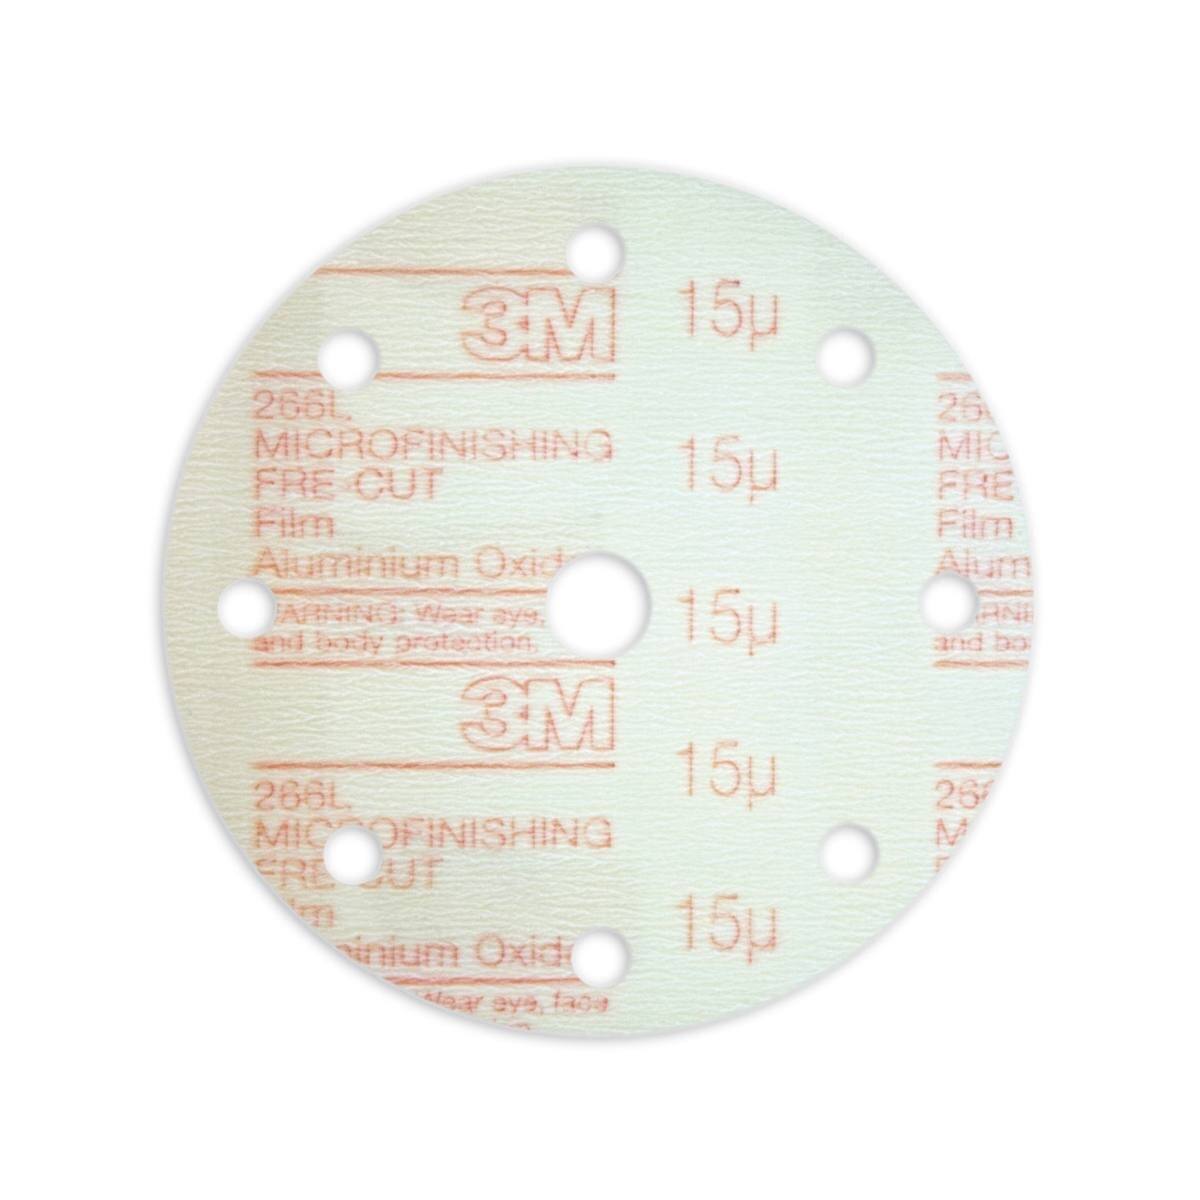 Disco per microfinitura 3M Hookit con gancio e anello 266L, 150 mm, LD801A, 9 fori, 15 micron #00140